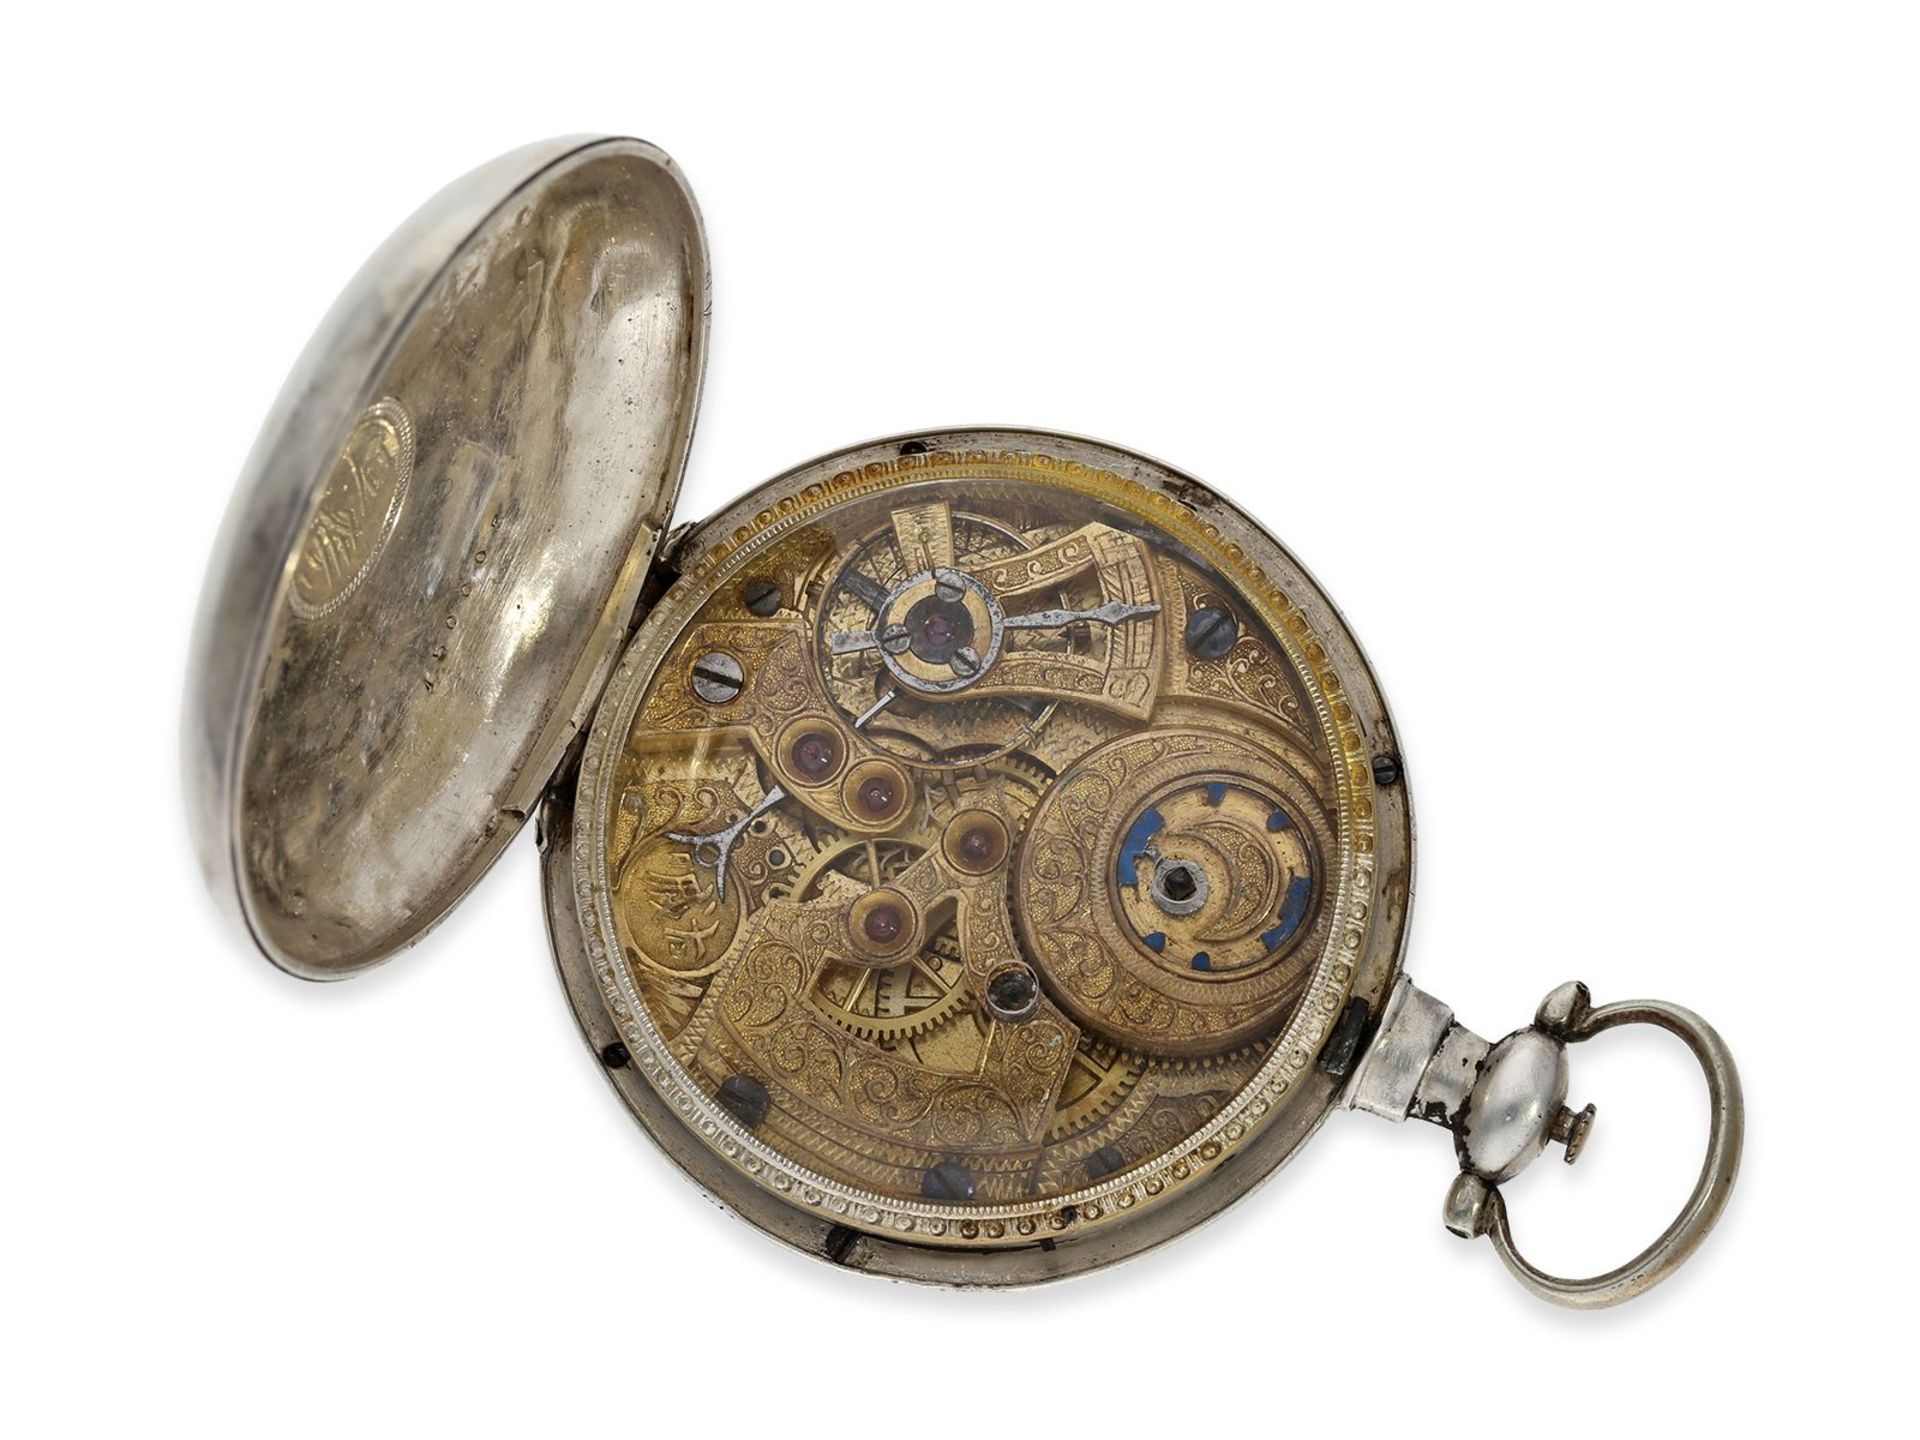 Taschenuhr: sehr seltene Taschenuhr für den chinesischen Markt mit sog. "Zodiac-Dial", Leo Juvet - Image 2 of 3